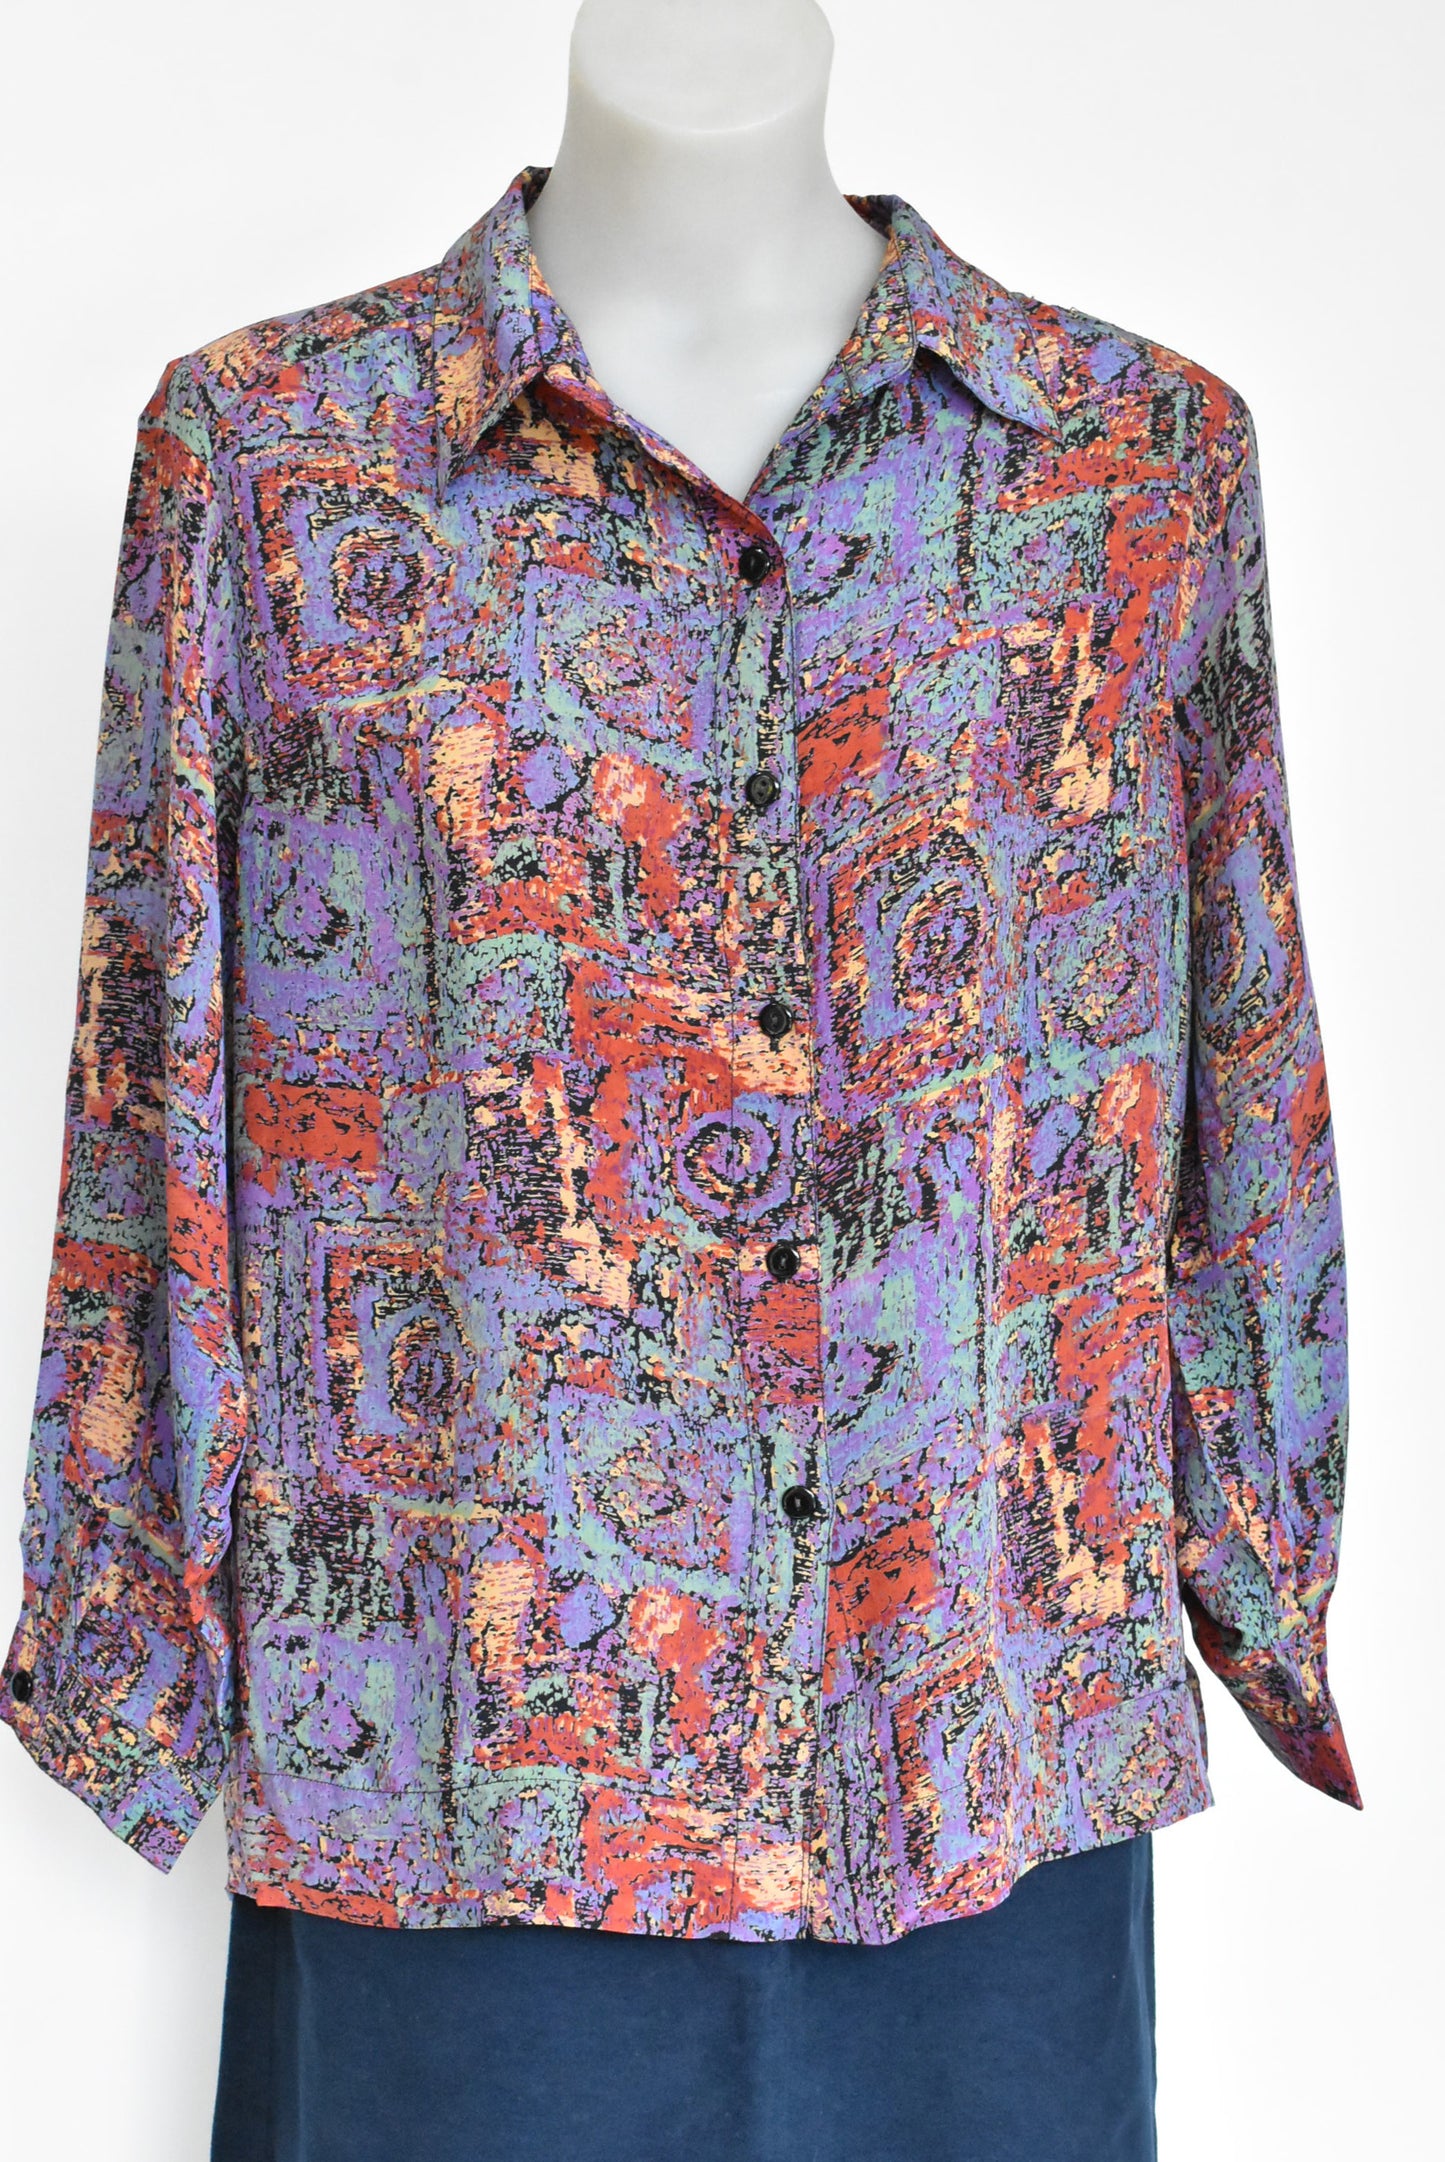 Eves St Clair retro silk shirt, M/L